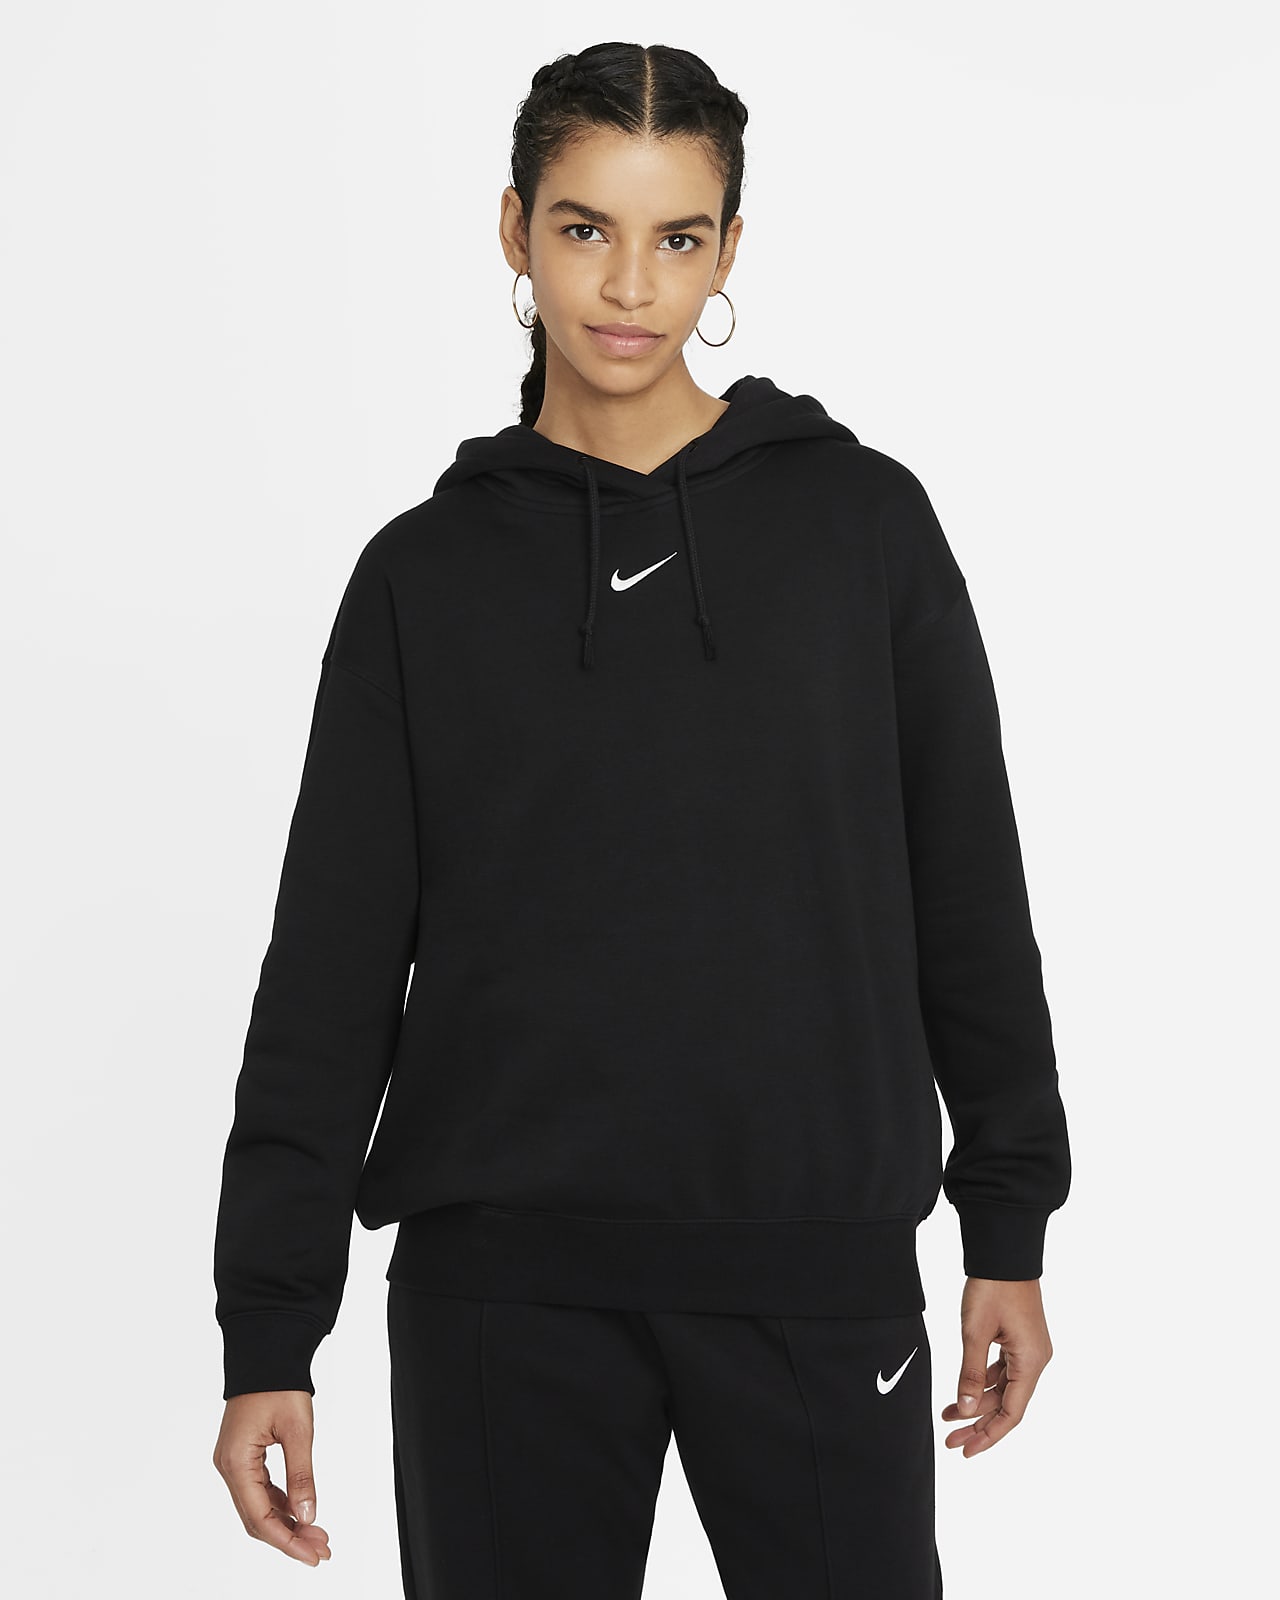 Felpa oversize in fleece con cappuccio Nike Sportswear Essential Collection - Donna